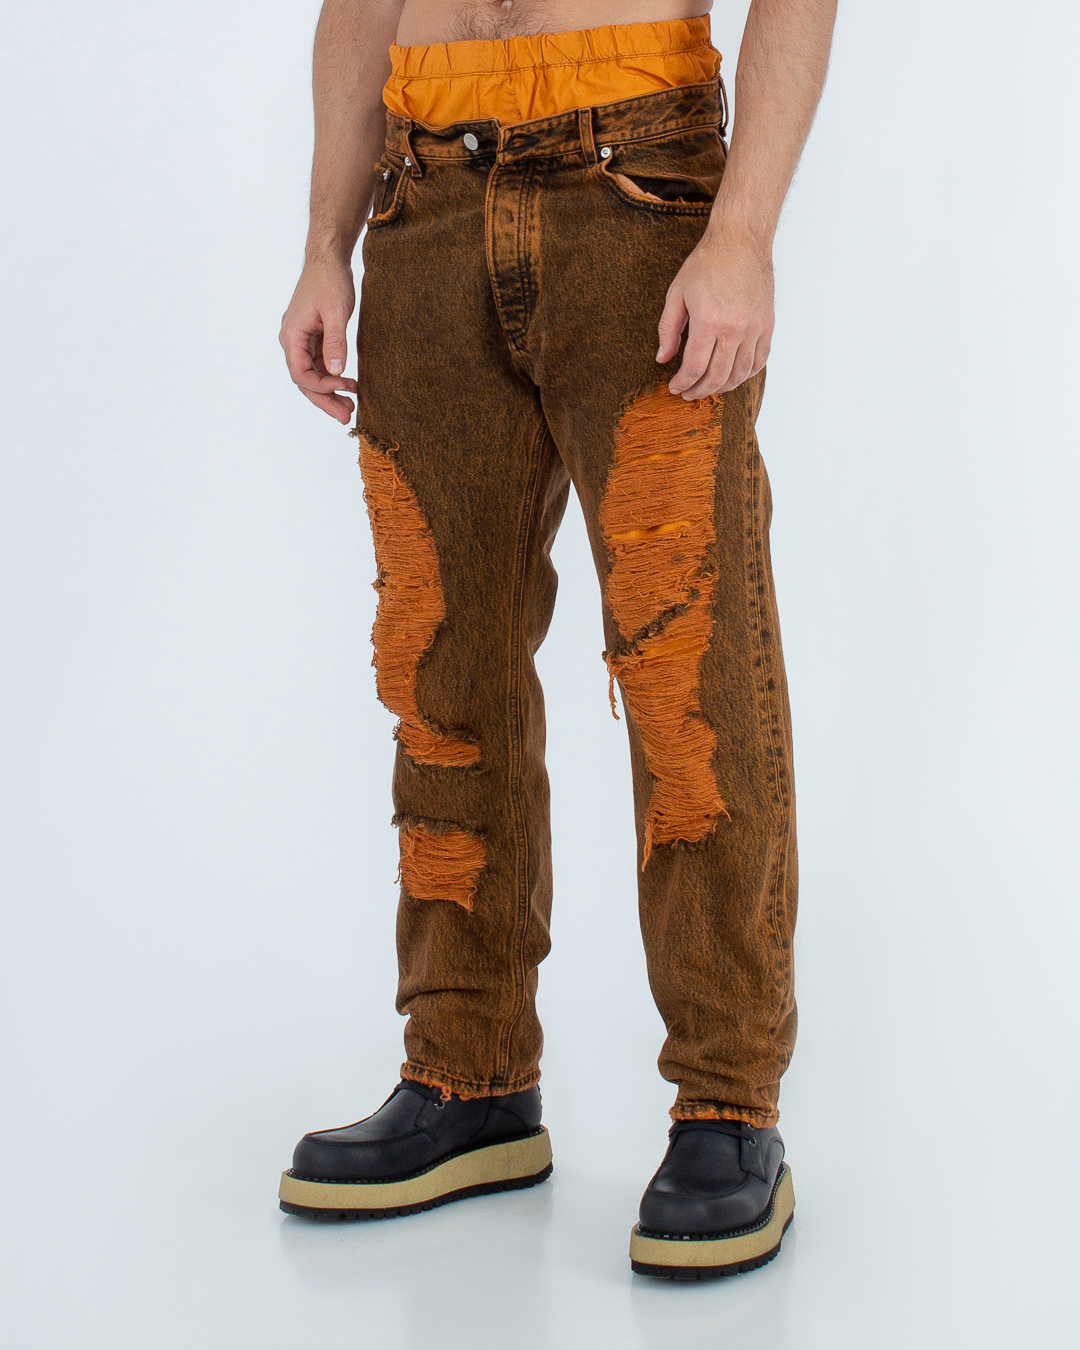 джинсы ICON DENIM JEREMY ID670 черный+оранжевый 33, размер 33, цвет черный+оранжевый JEREMY ID670 черный+оранжевый 33 - фото 3